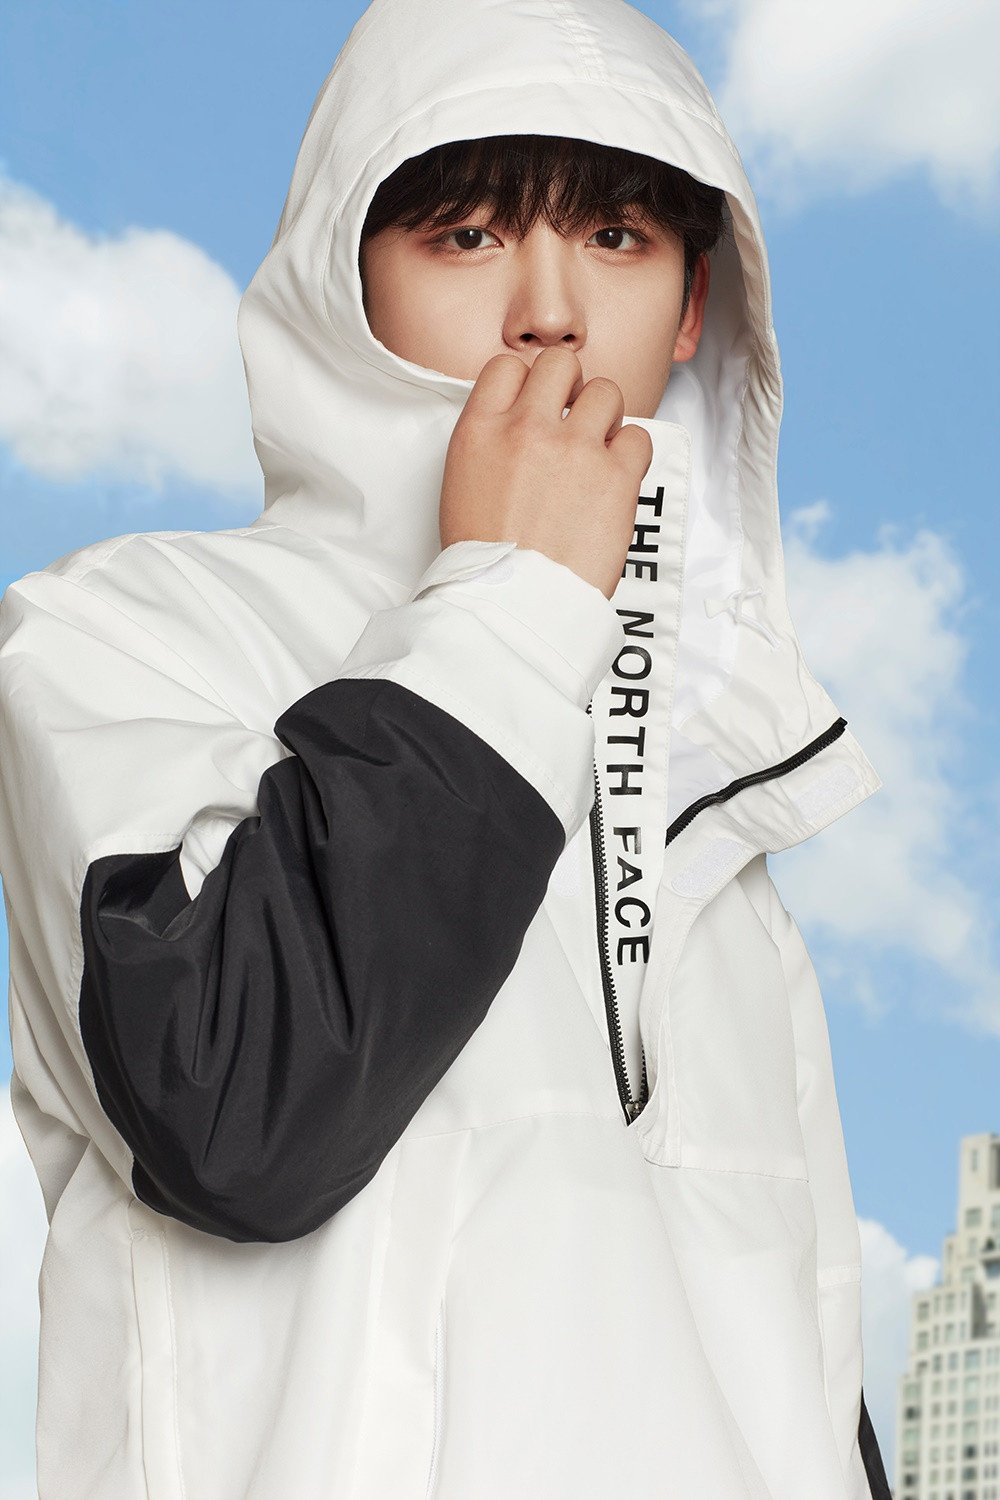 Ким Ё Хан из WEi выбран в качестве новой рекламной модели бренда The North Face